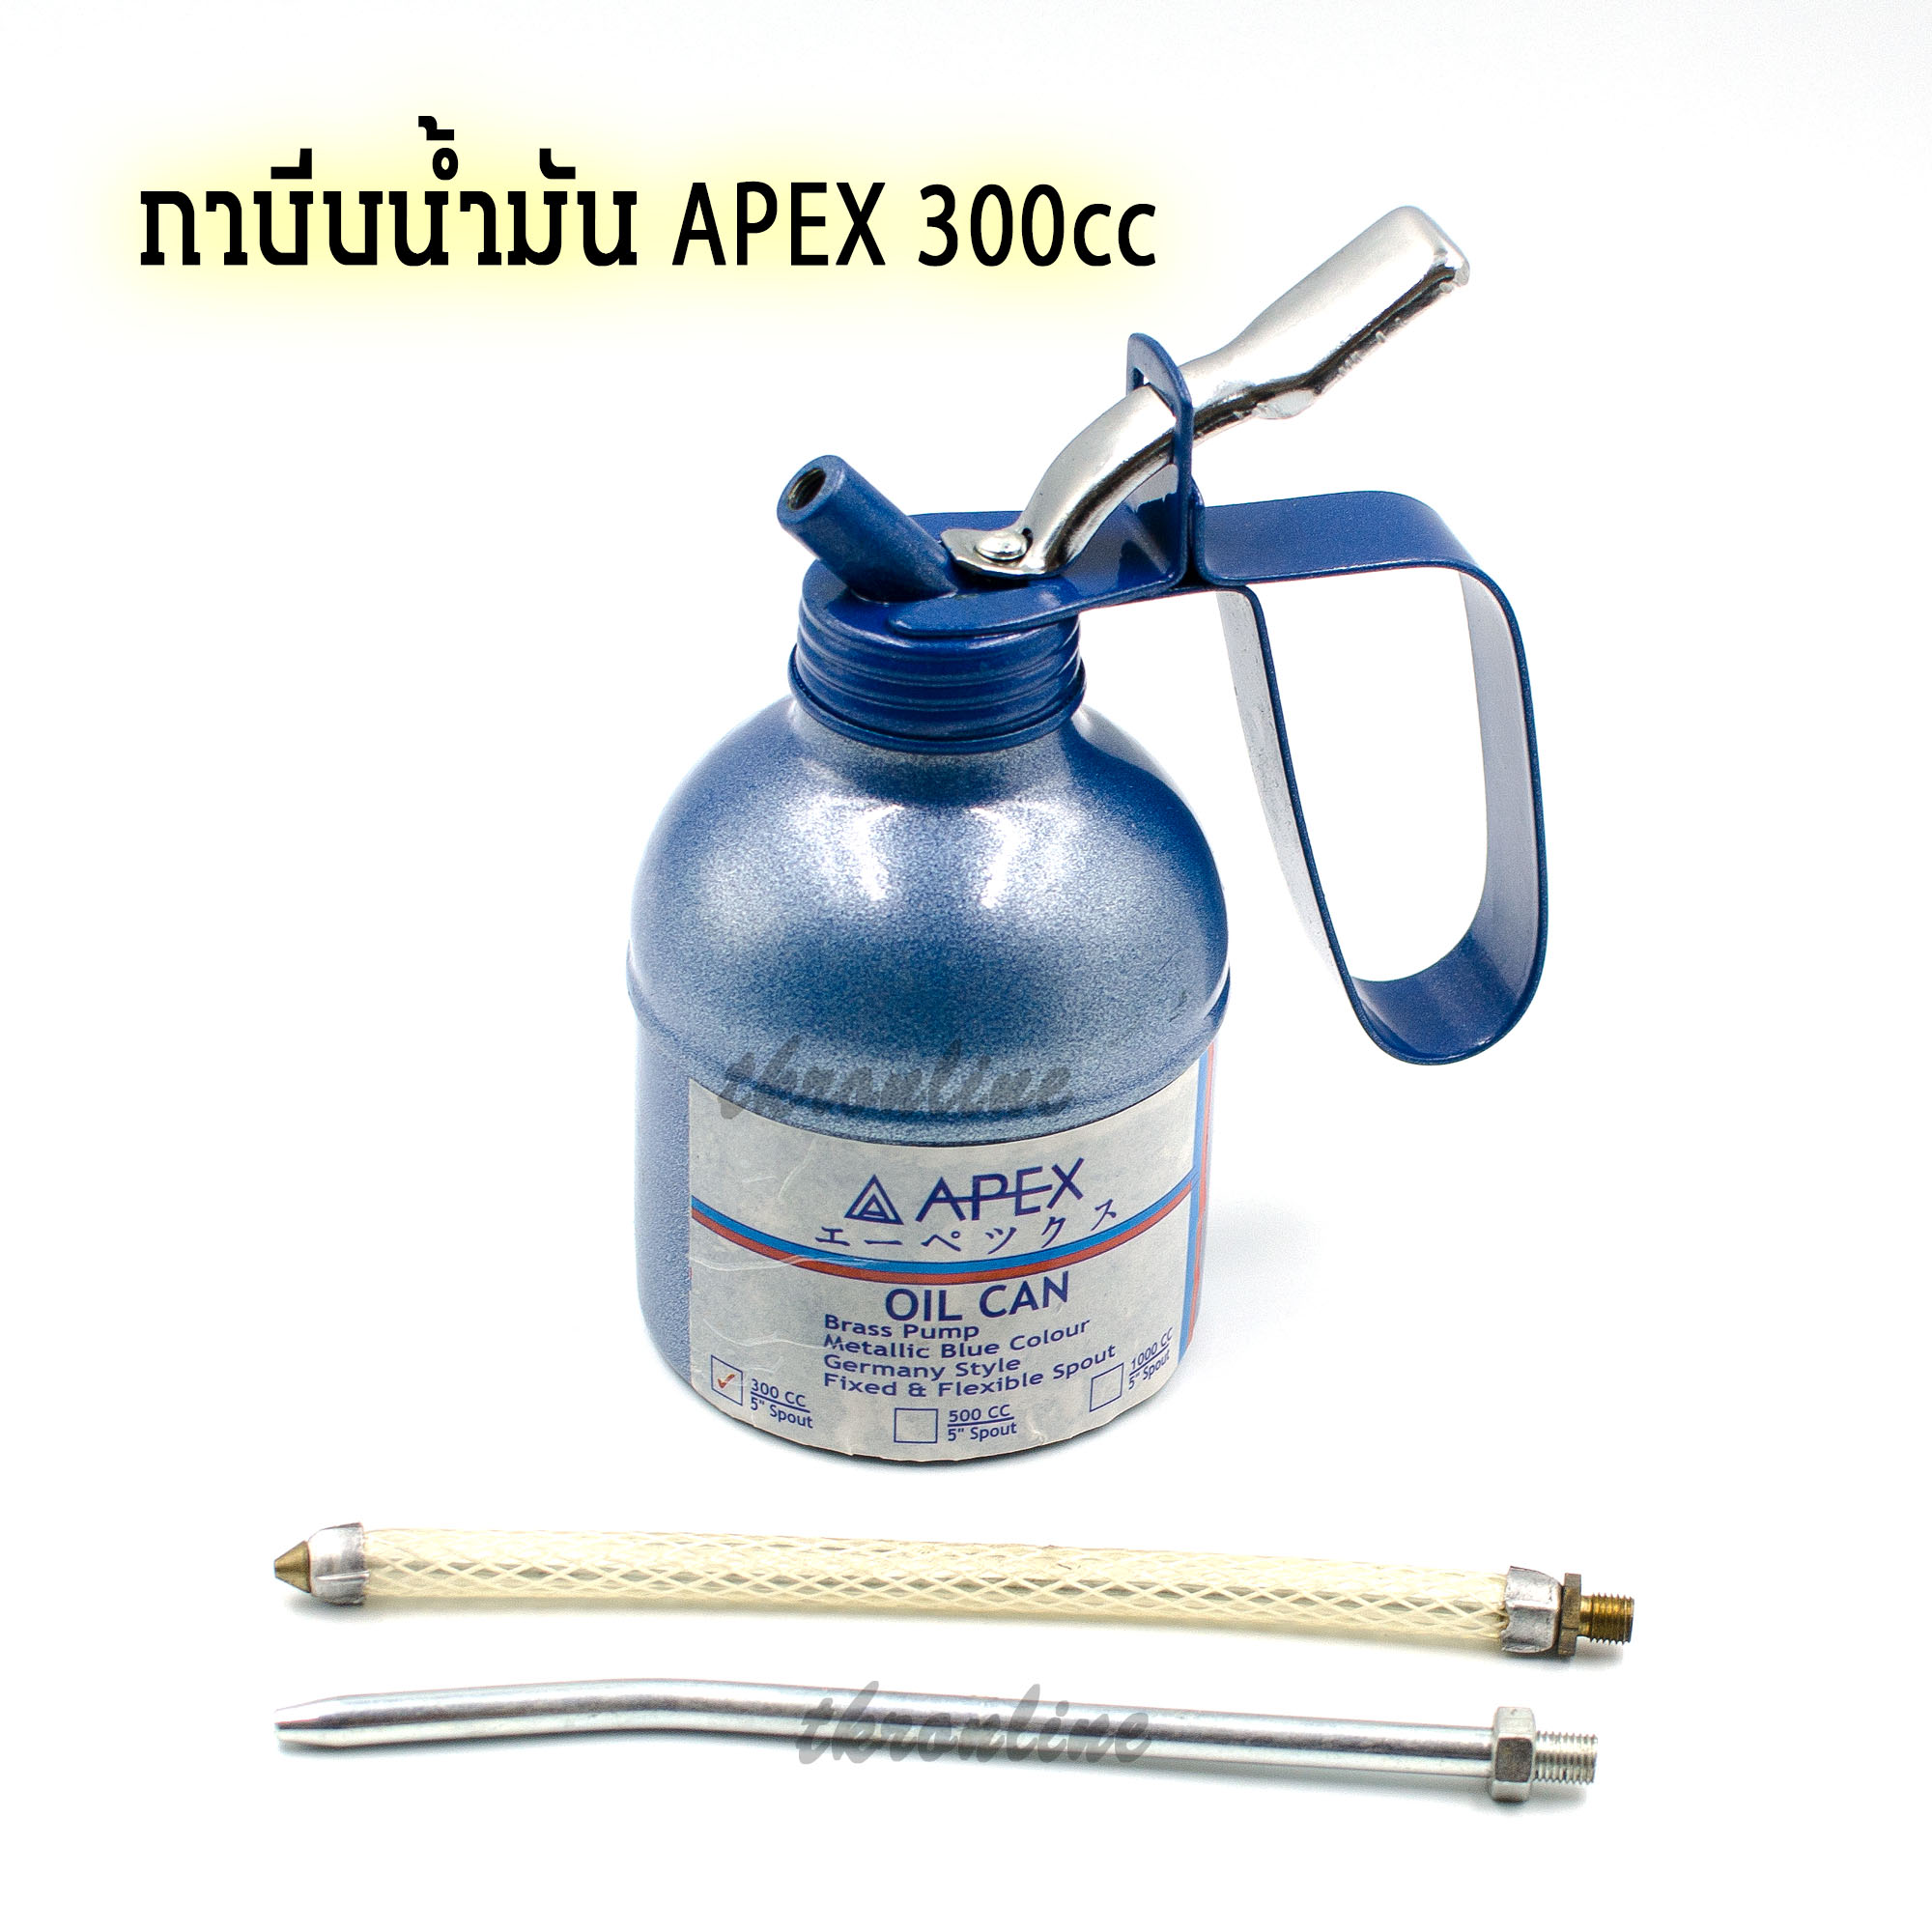 APEX 300cc  กาบีบน้ำมัน กาหยอดน้ำมันพร้อมสายอ่อน และสายแข็งความยาว 5นิ้ว